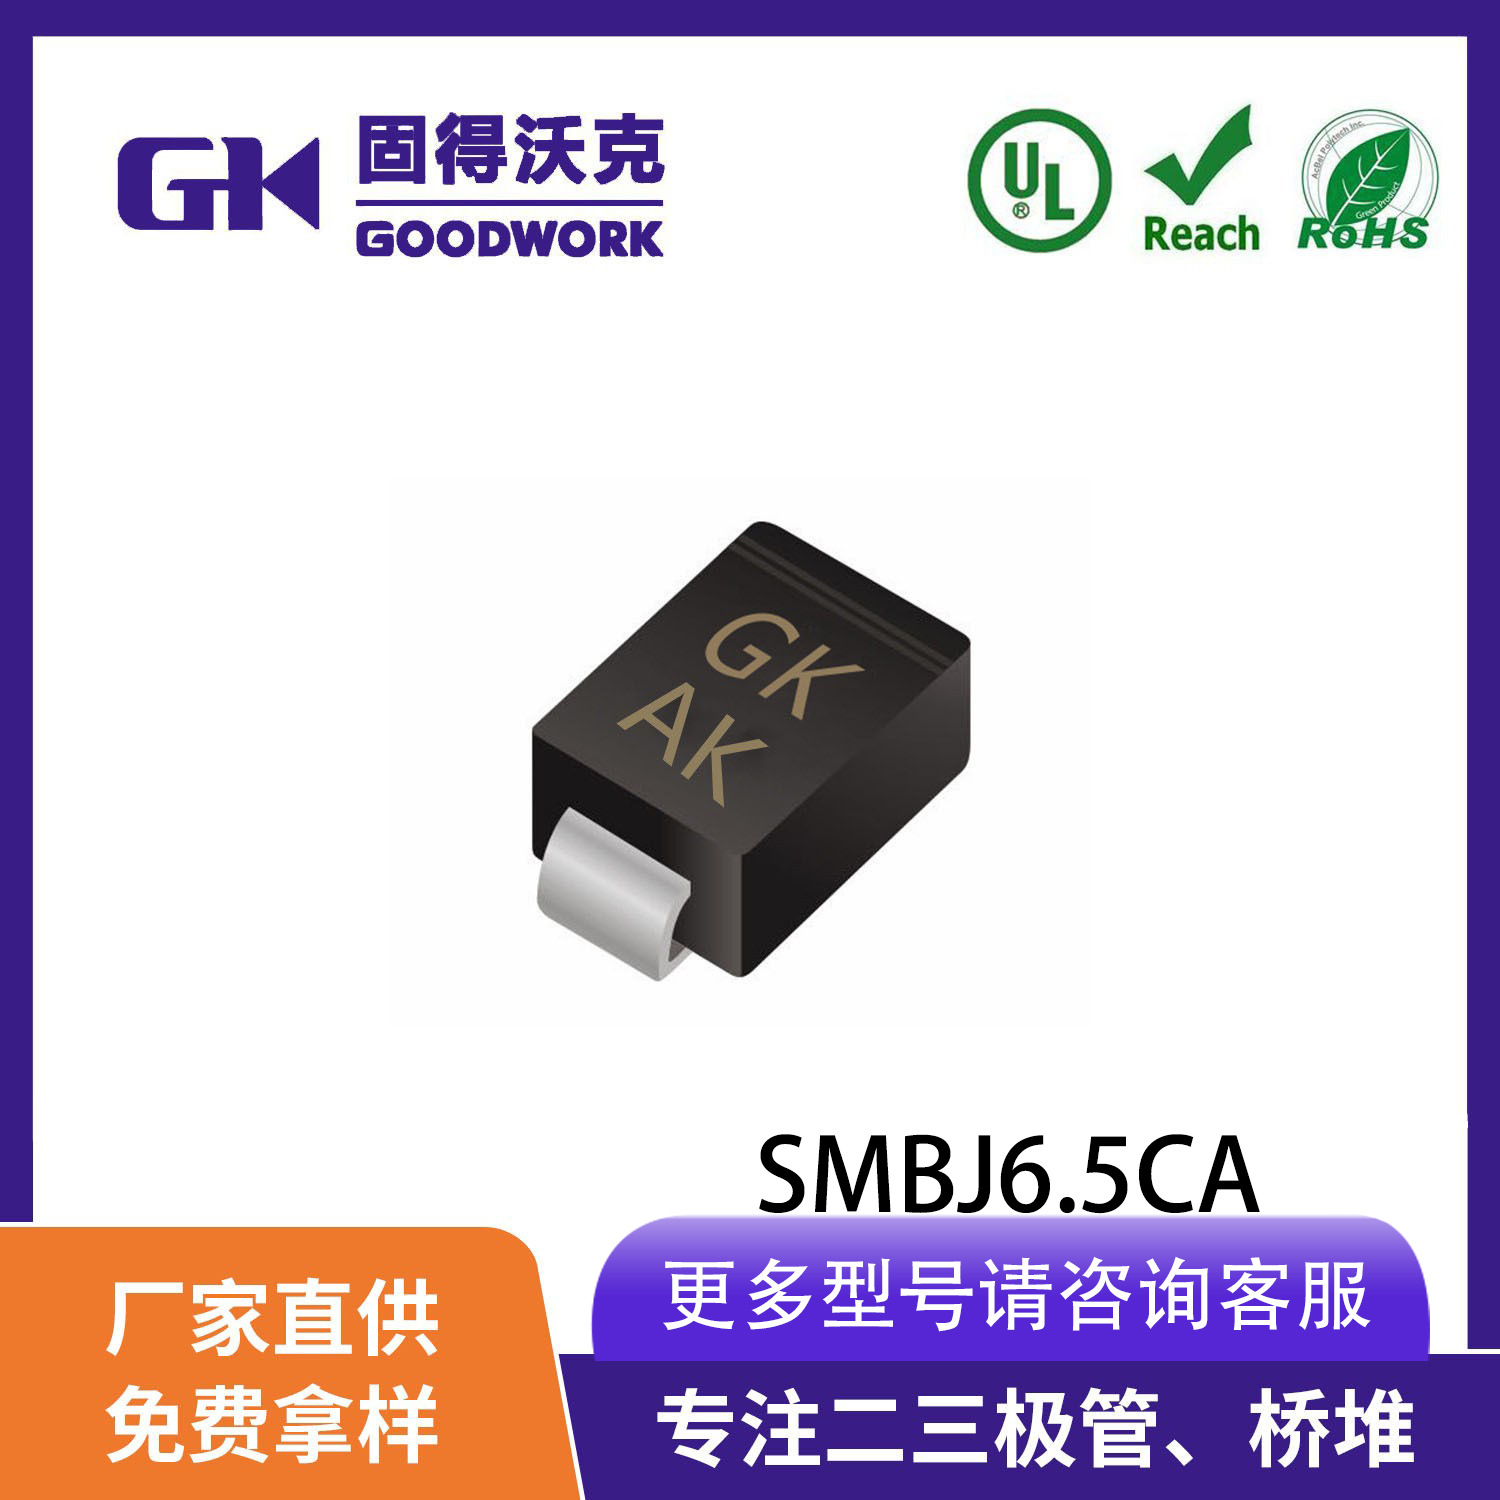 现货供应GK品牌SMBJ6.5CA TVS瞬变抑制二极管SMB封装 厂家直销